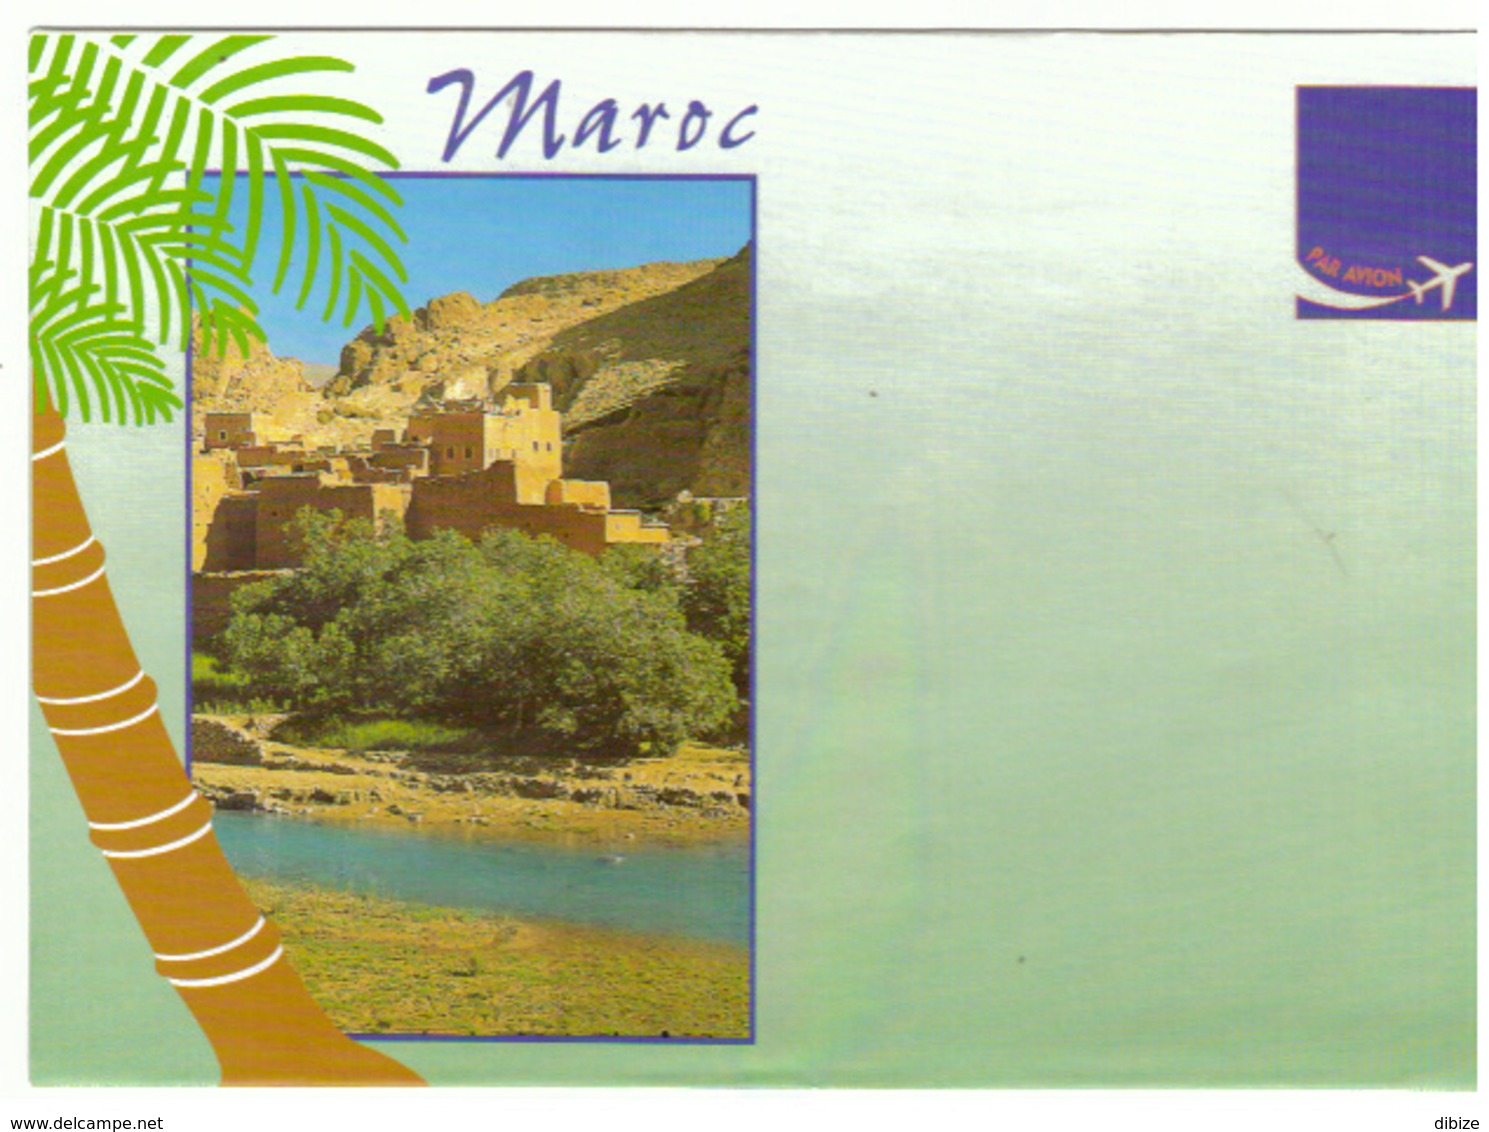 Maroc. 9 Enveloppes illustrées. Sud marocain et Divers